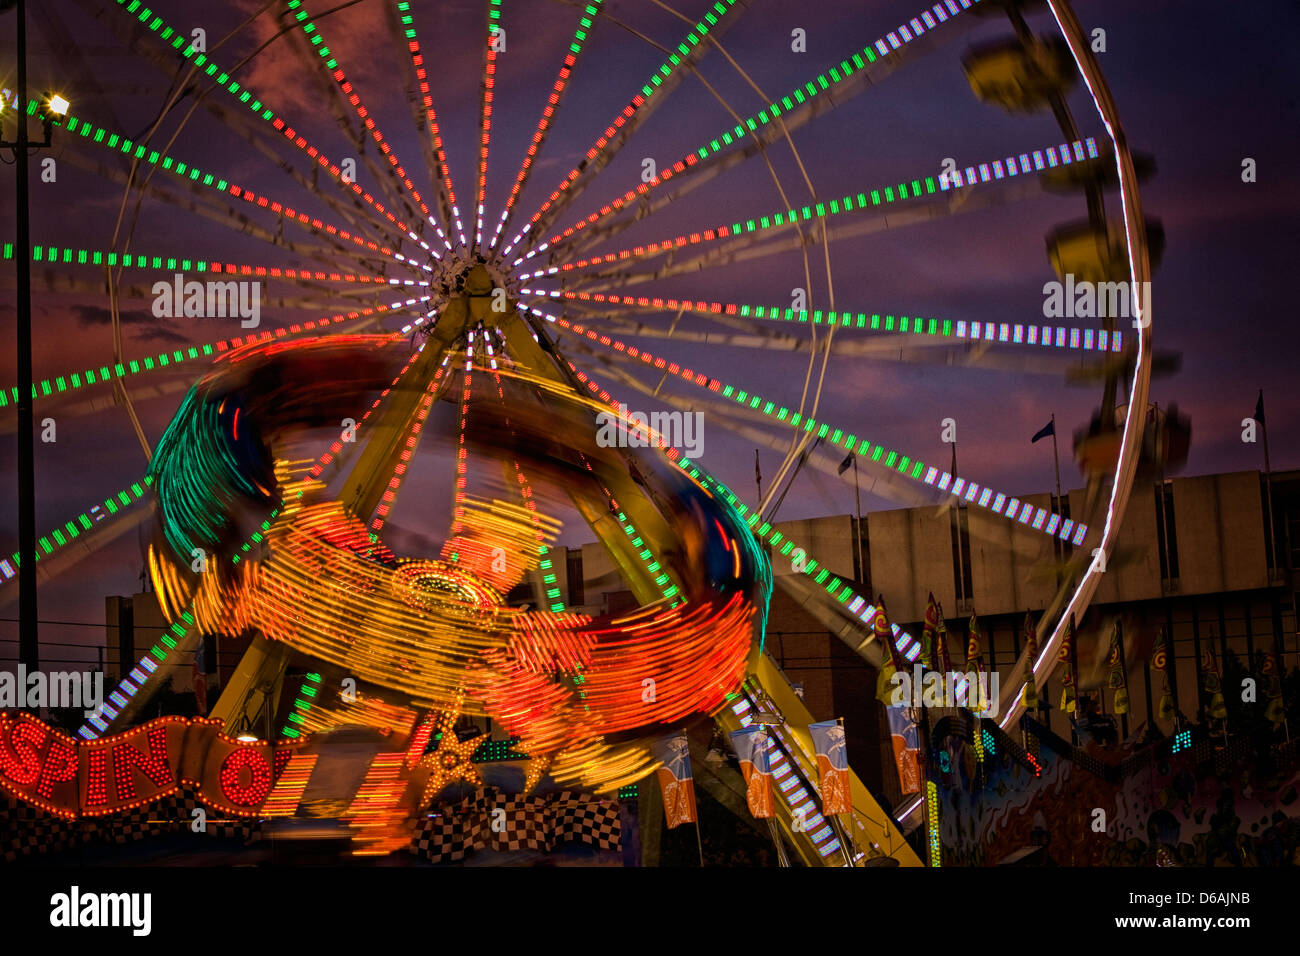 Spin Out, un manège de nuit avec grande roue derrière elle, photographiée de nuit avec une longue exposition montrant le motion blur Banque D'Images